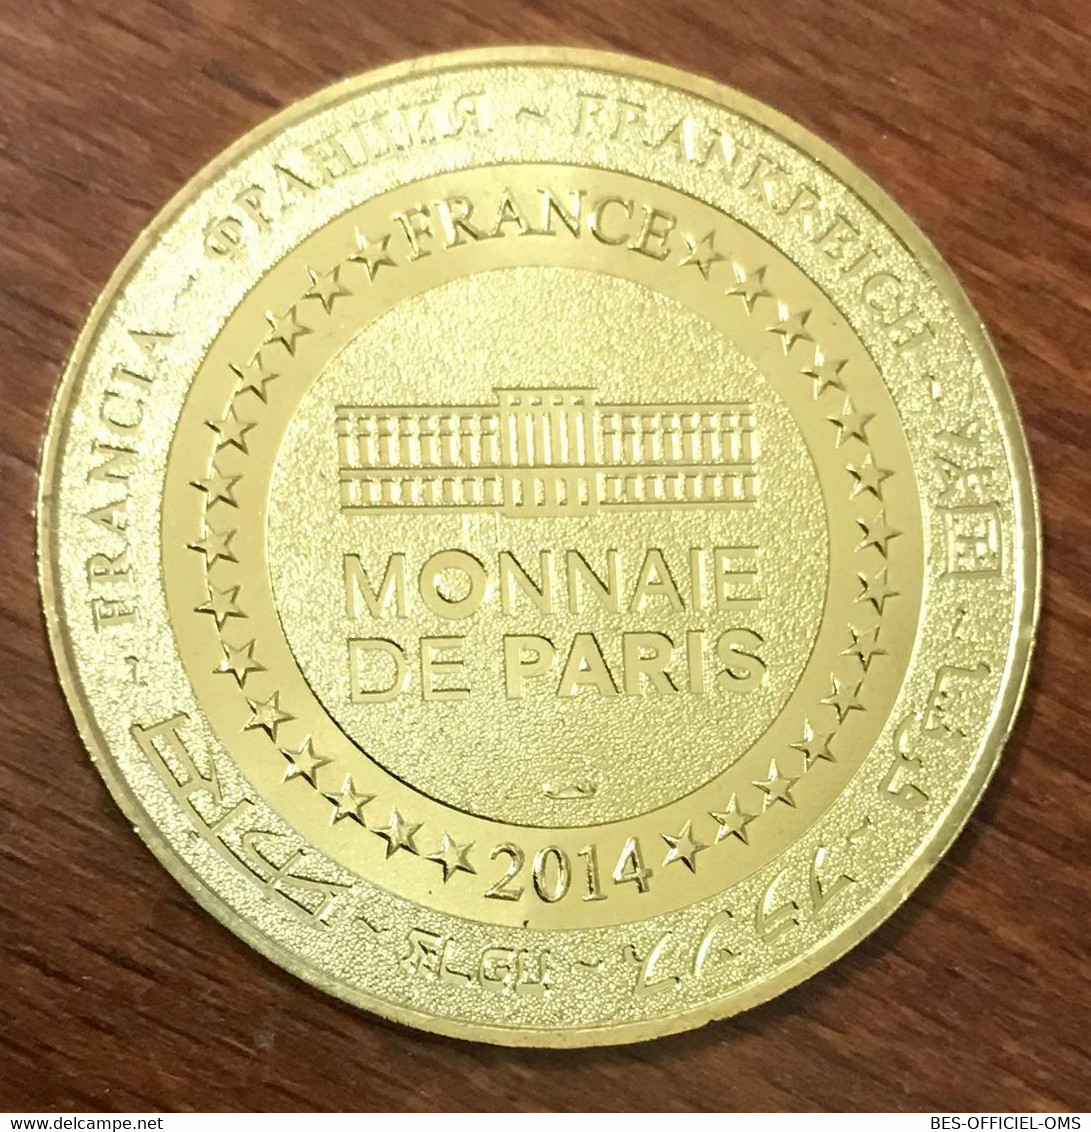 30 UZÈS BONBON HARIBO CROCO MDP 2014 MEDAILLE SOUVENIR MONNAIE DE PARIS JETON TOURISTIQUE MEDALS COINS TOKENS - 2014